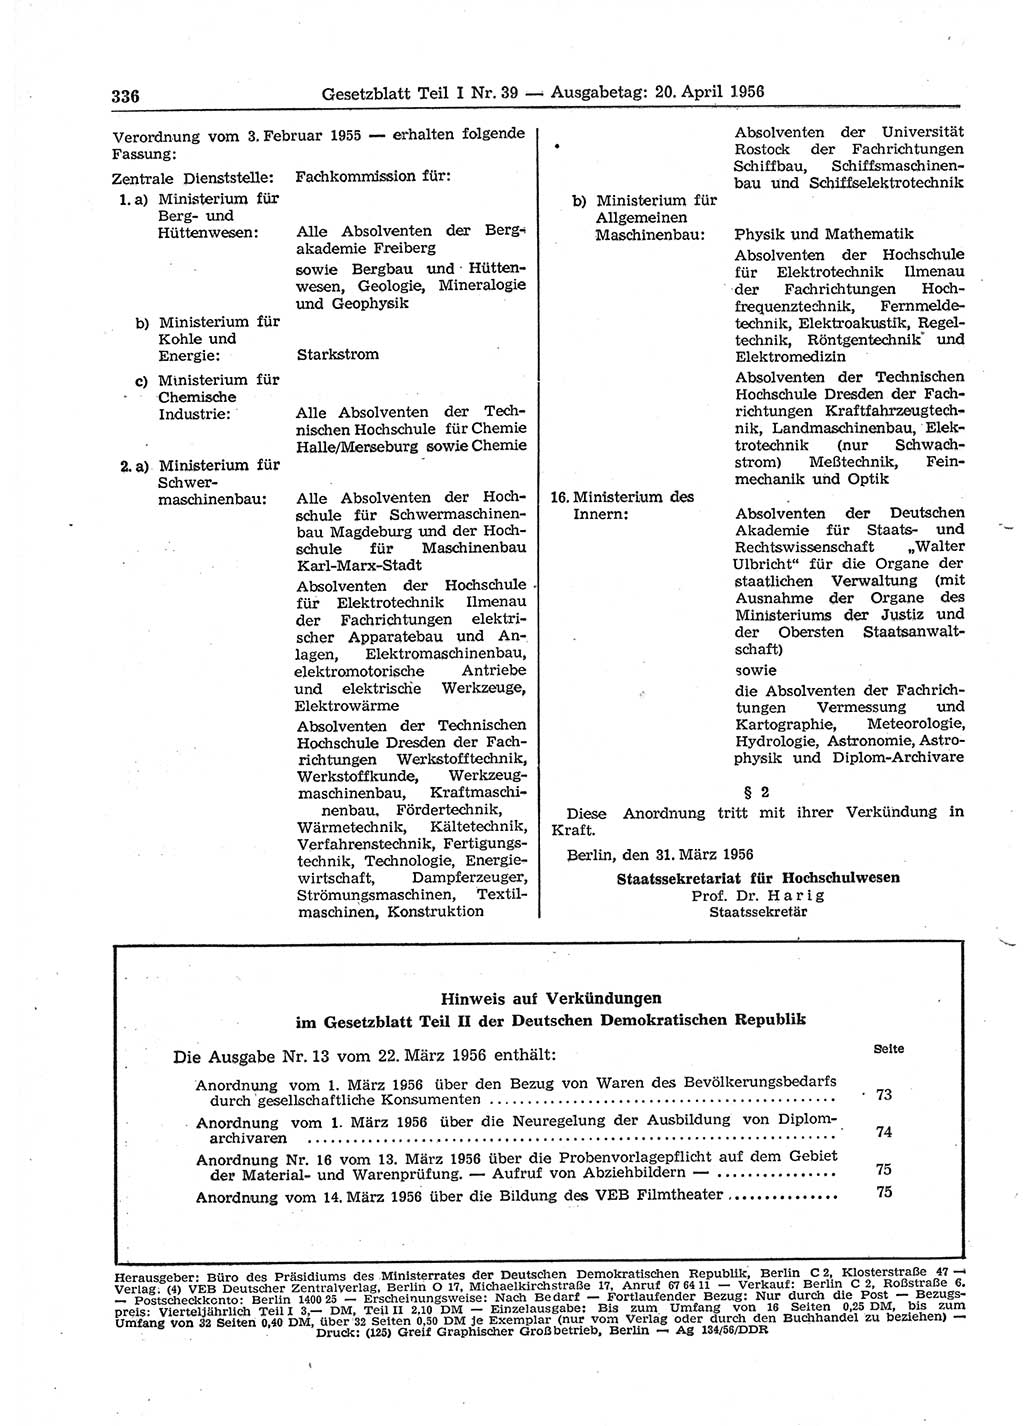 Gesetzblatt (GBl.) der Deutschen Demokratischen Republik (DDR) Teil Ⅰ 1956, Seite 336 (GBl. DDR Ⅰ 1956, S. 336)